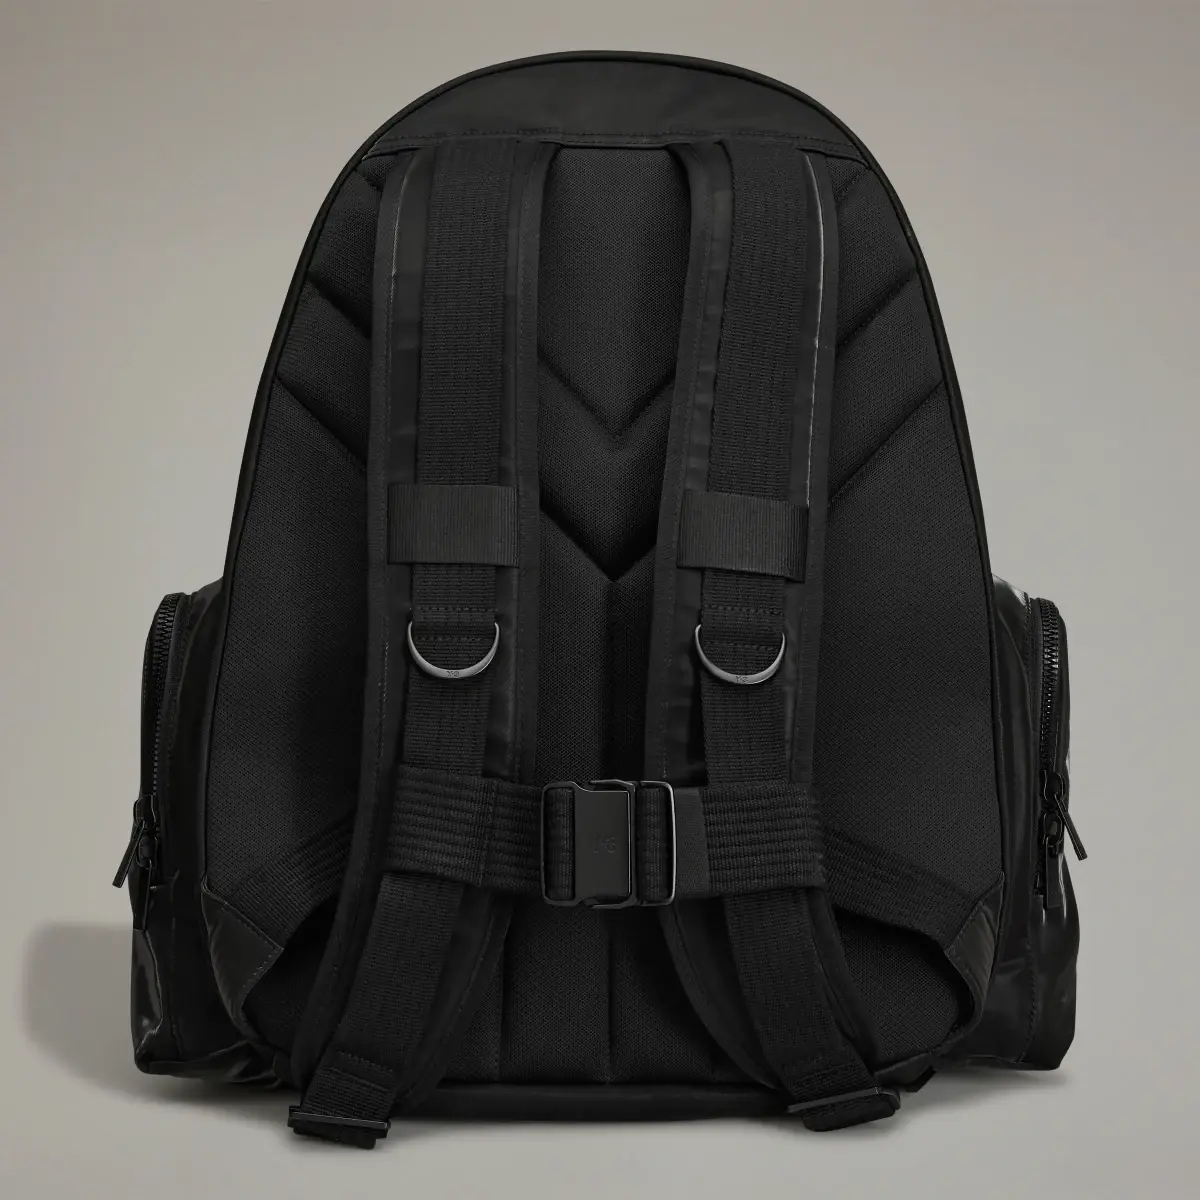 Adidas Y-3 Utility Backpack. 3